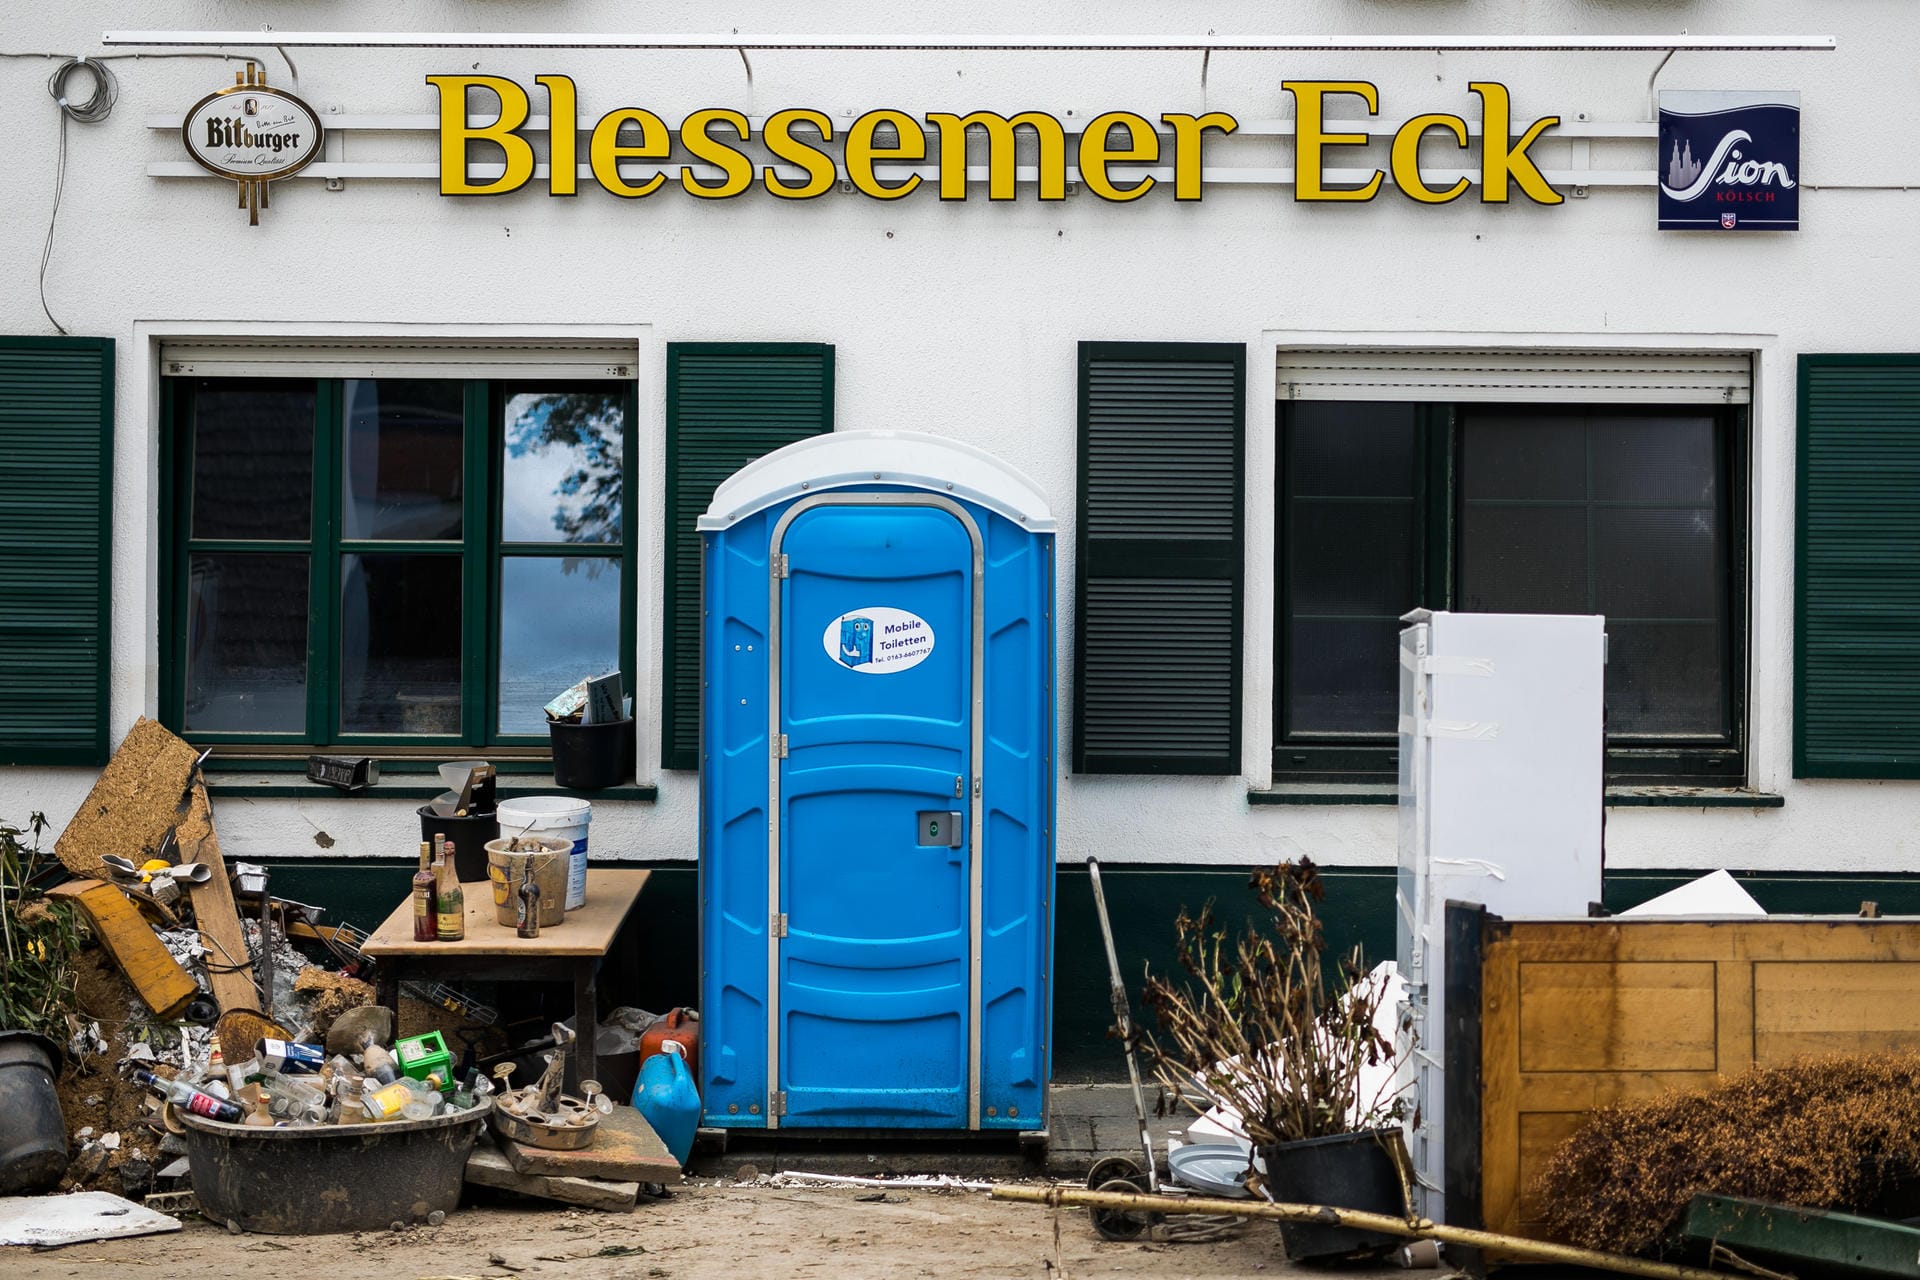 Die Gaststätte "Blessemer Eck" in der Frauenthaler Straße: Vor der Gaststätte liegt neben einem Toilettenhäuschen Müll, Pfandflaschen und Unrat.